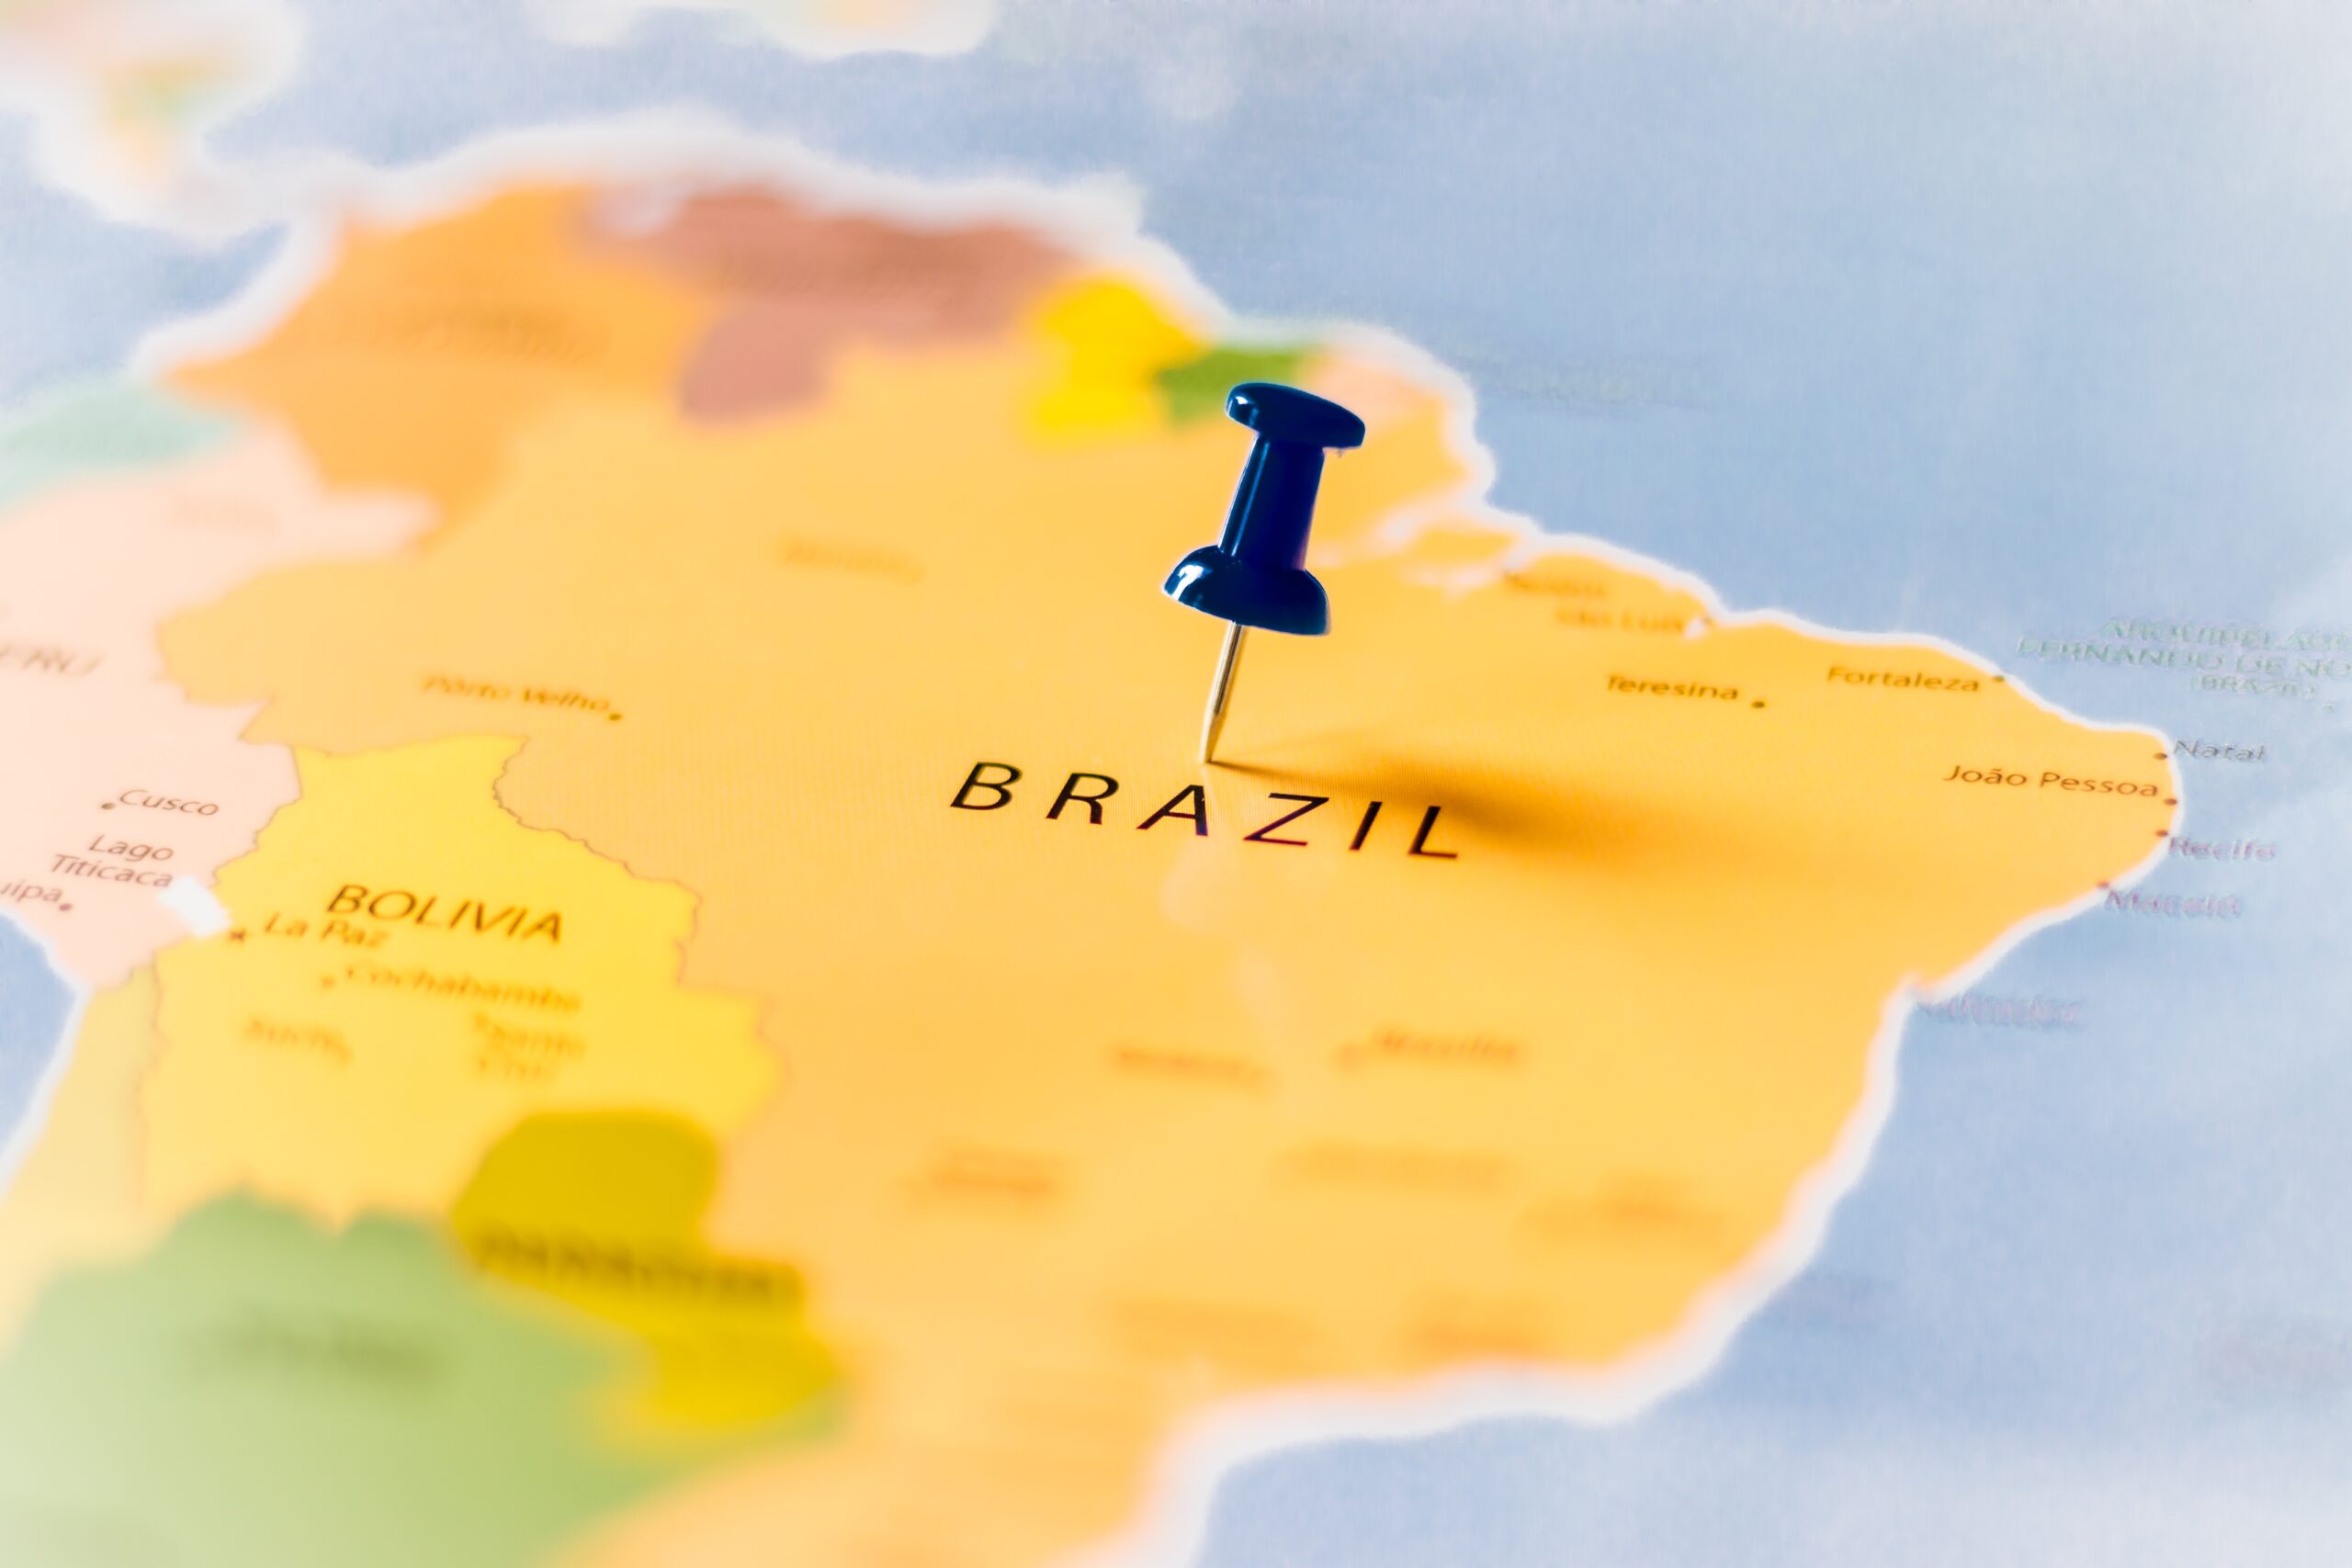 Kort der viser Brasilien som et af de lande, hvor der er risiko for dengue feber